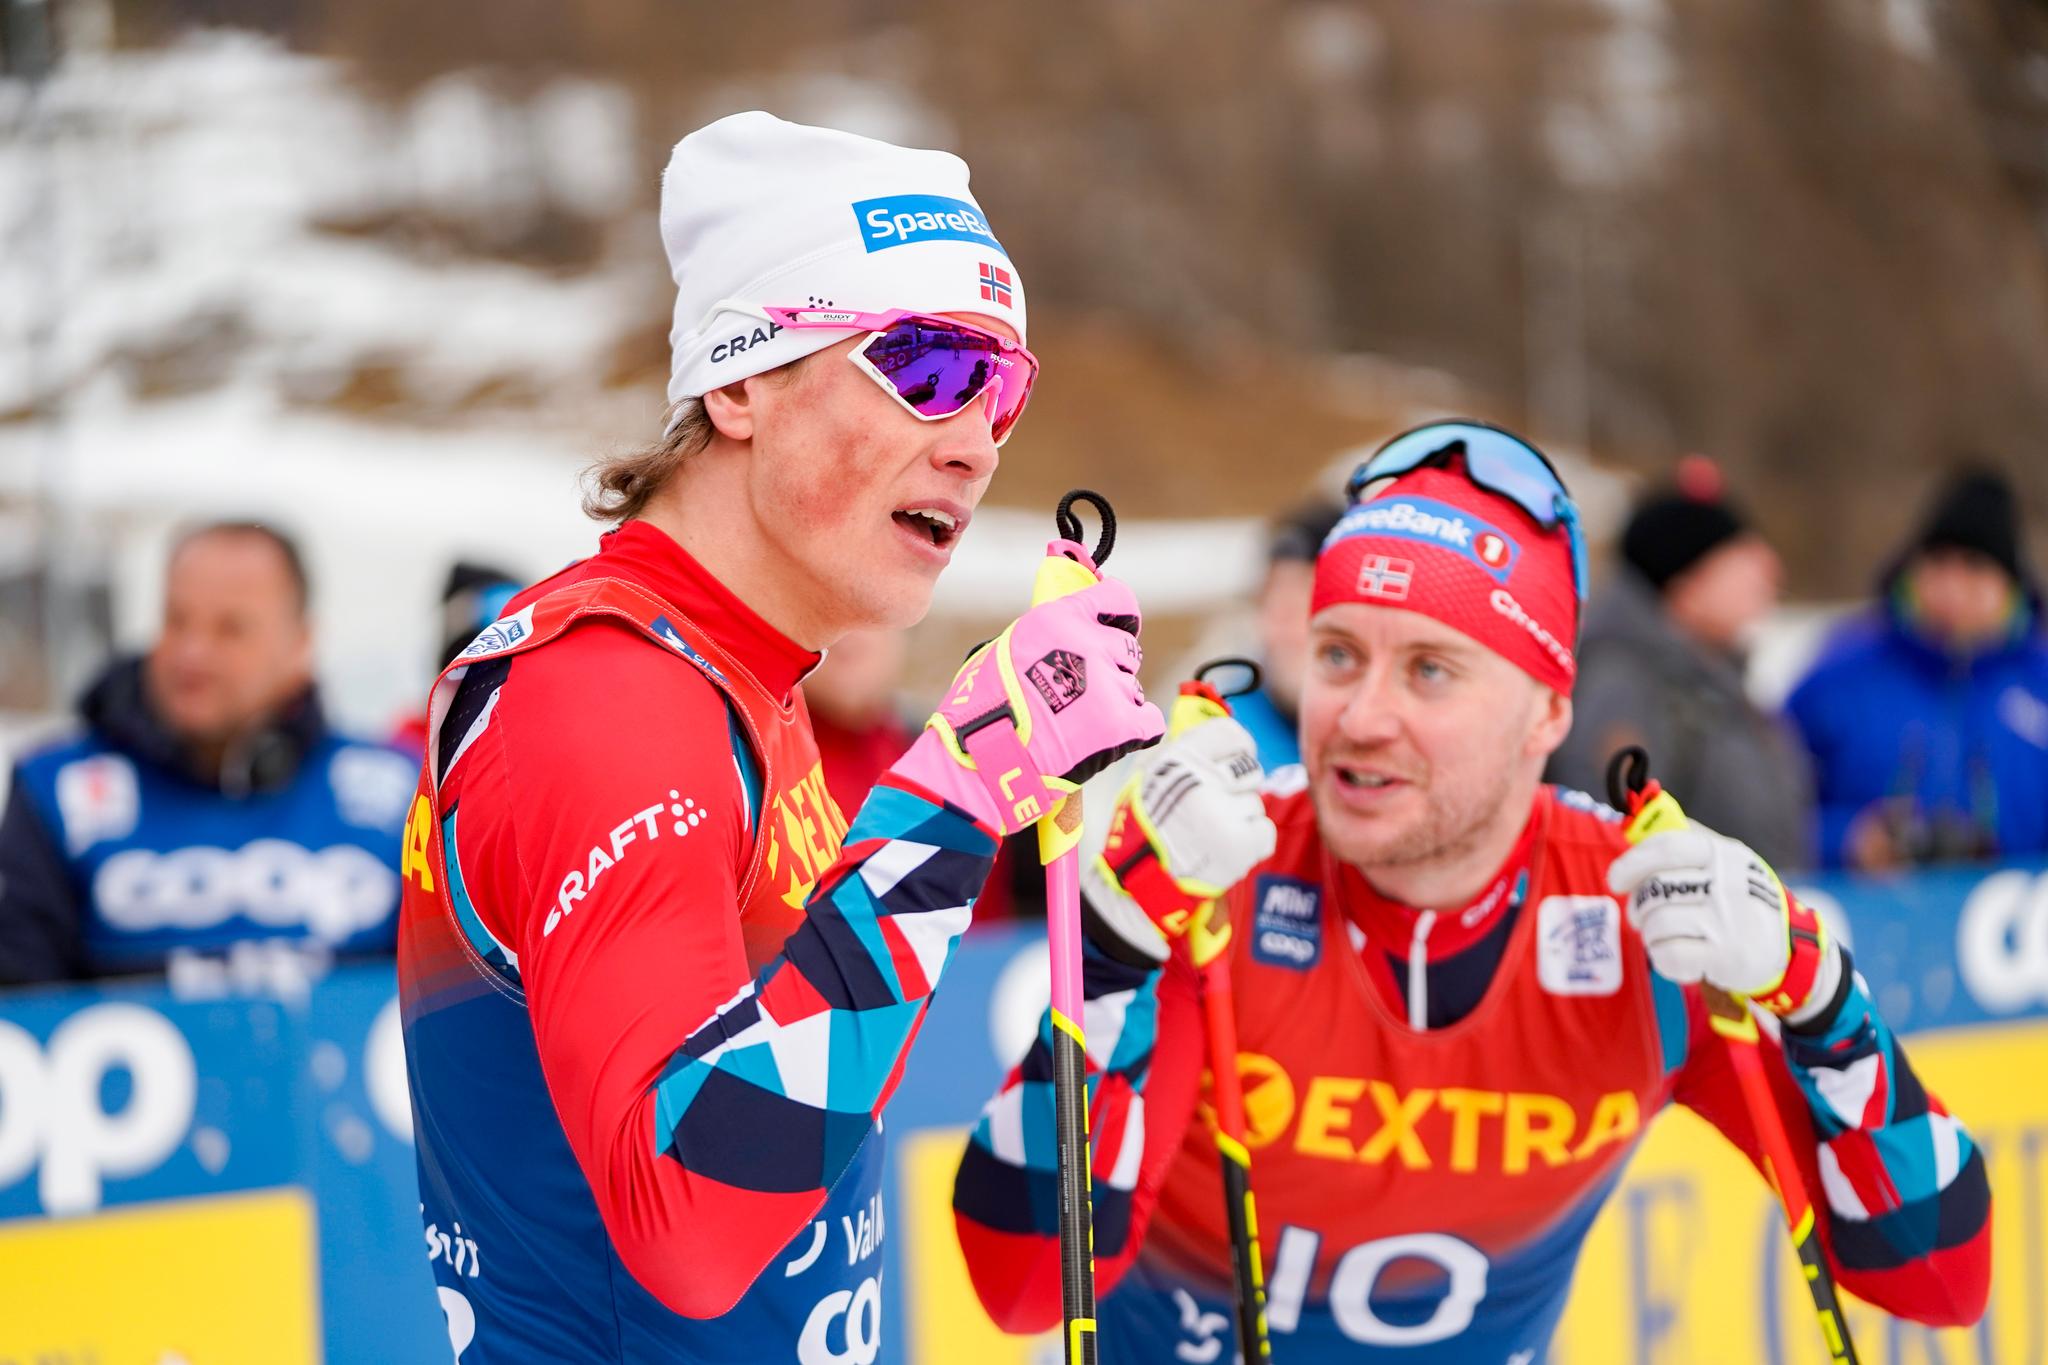 STERK NORSK DAG: Johannes Høsflot Klæbo vant, mens Sindre Bjørnestad Skar tok en sterk tredjeplass under sprinten i Val Müstair lørdag. Men etter rennet var de ikke helt enige i taktikken underveis.